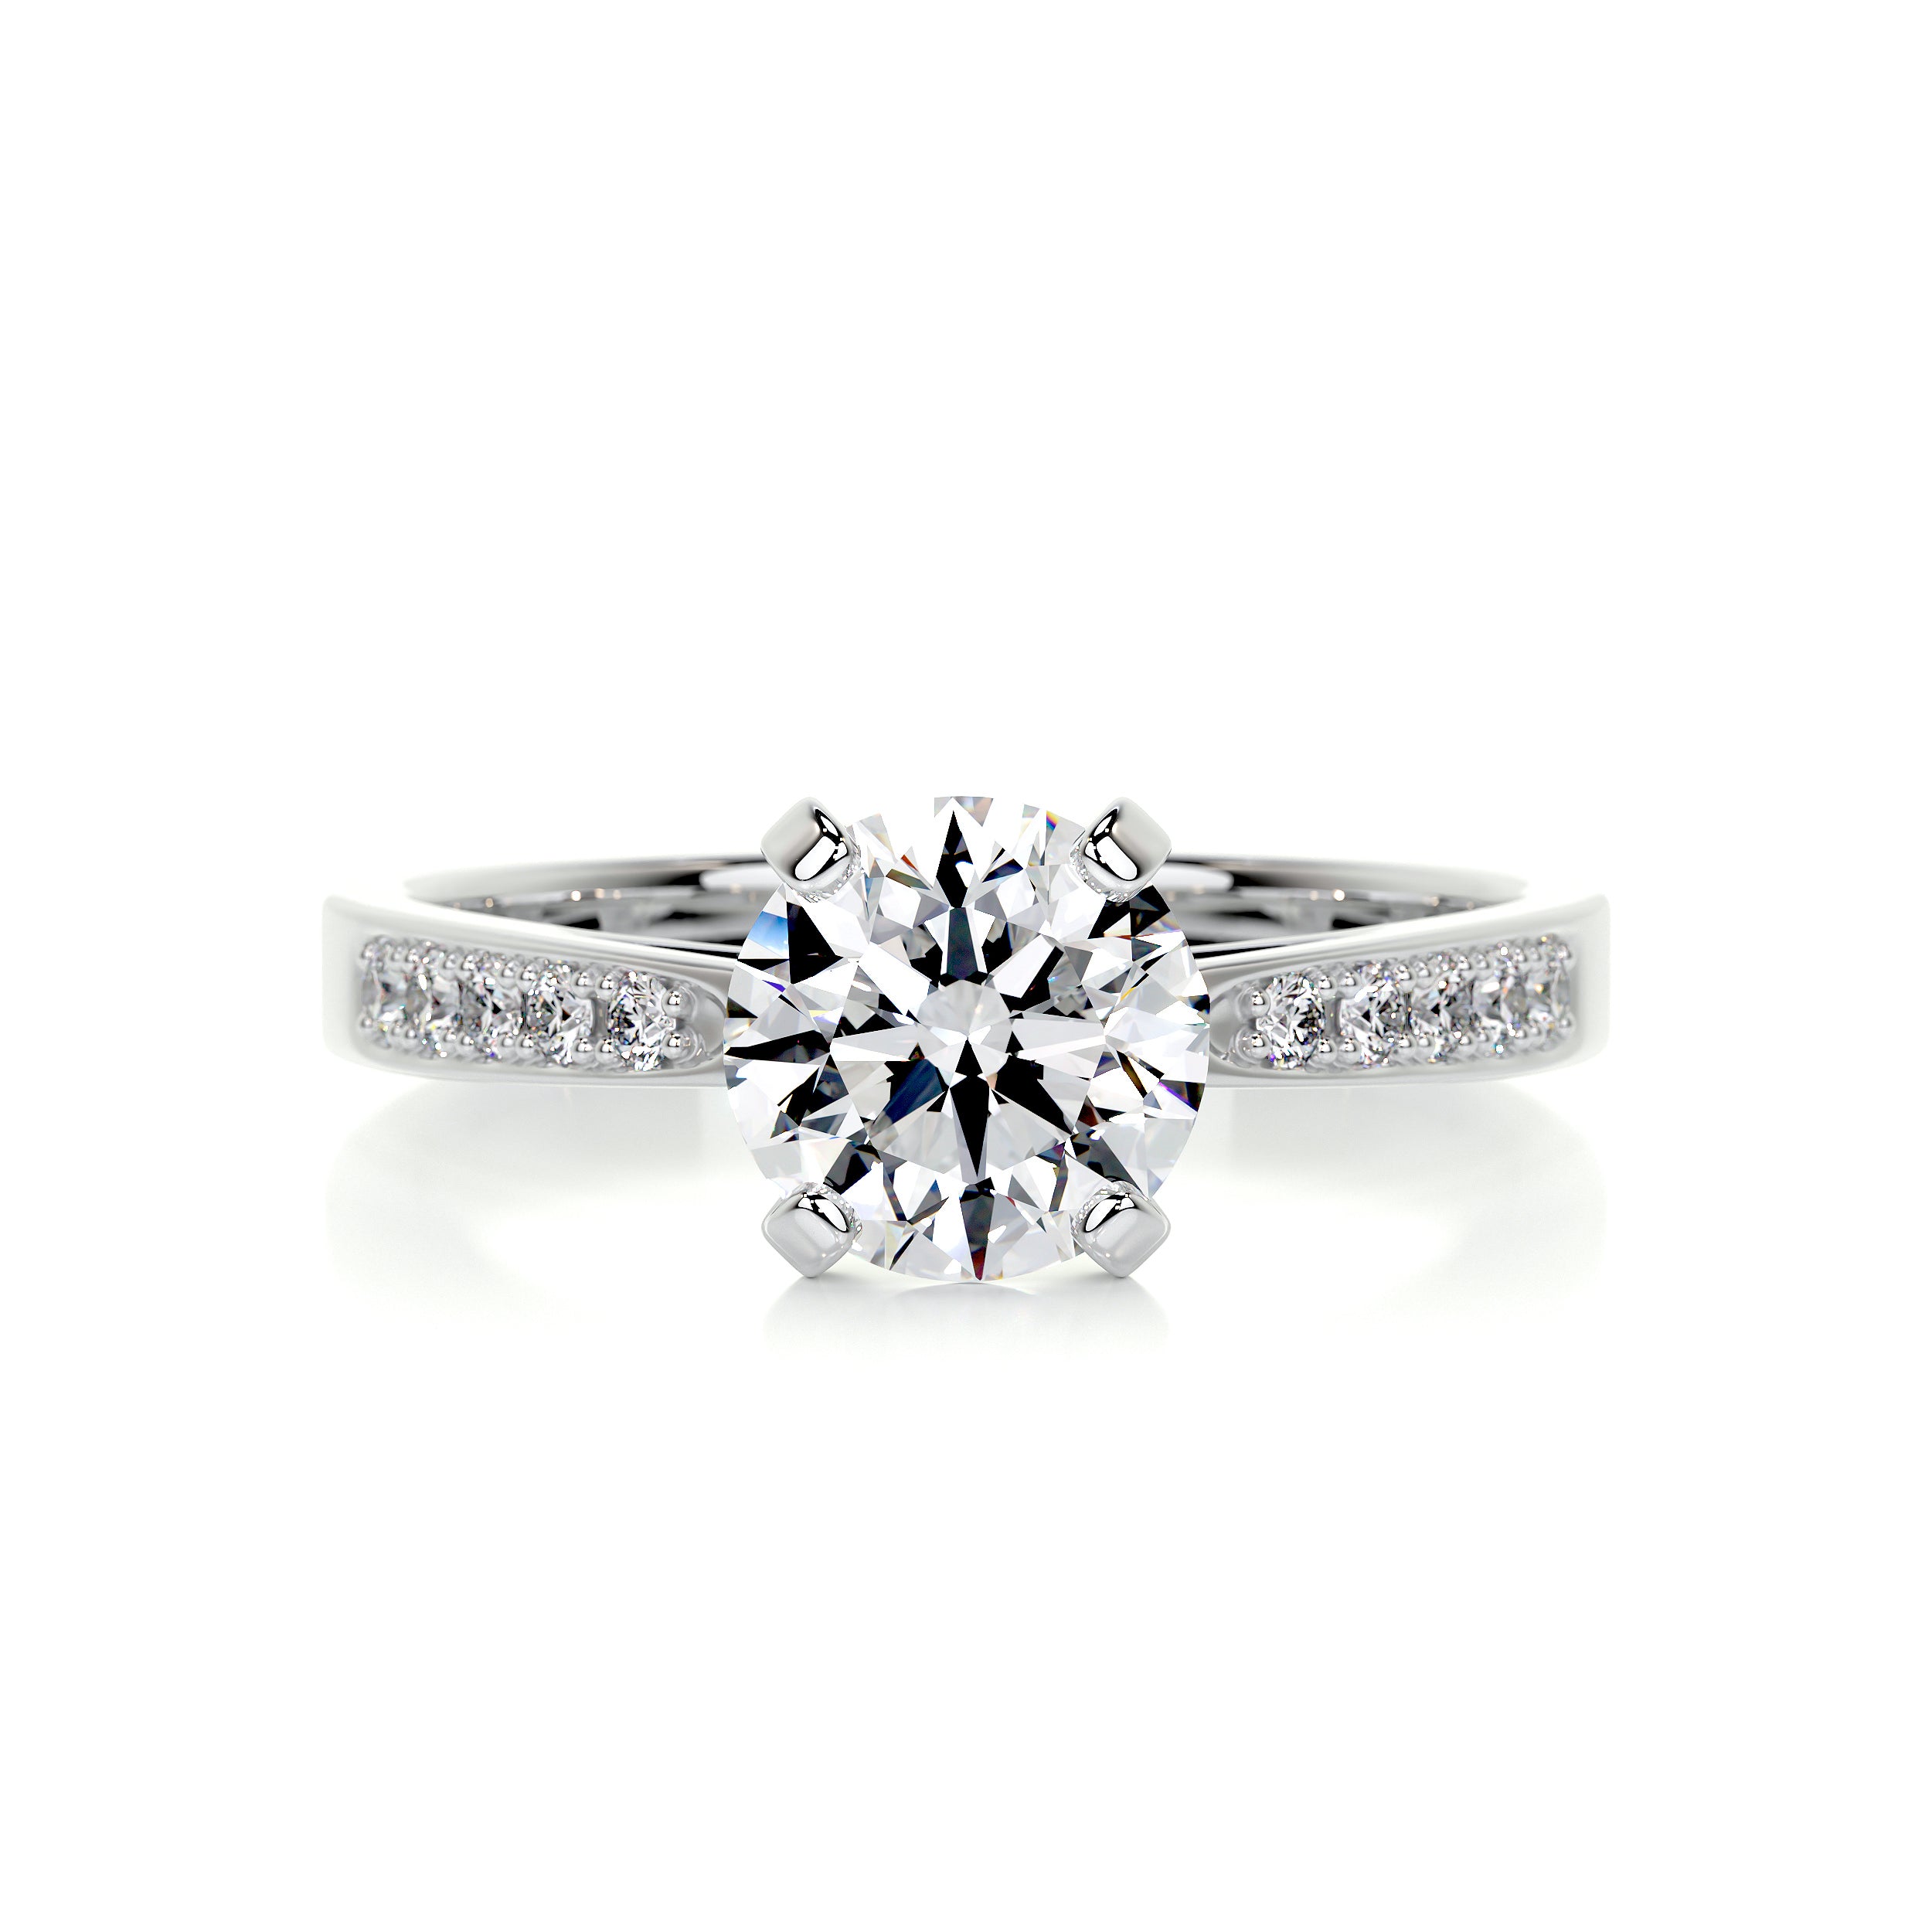 Margaret Diamond Engagement Ring -18K White Gold